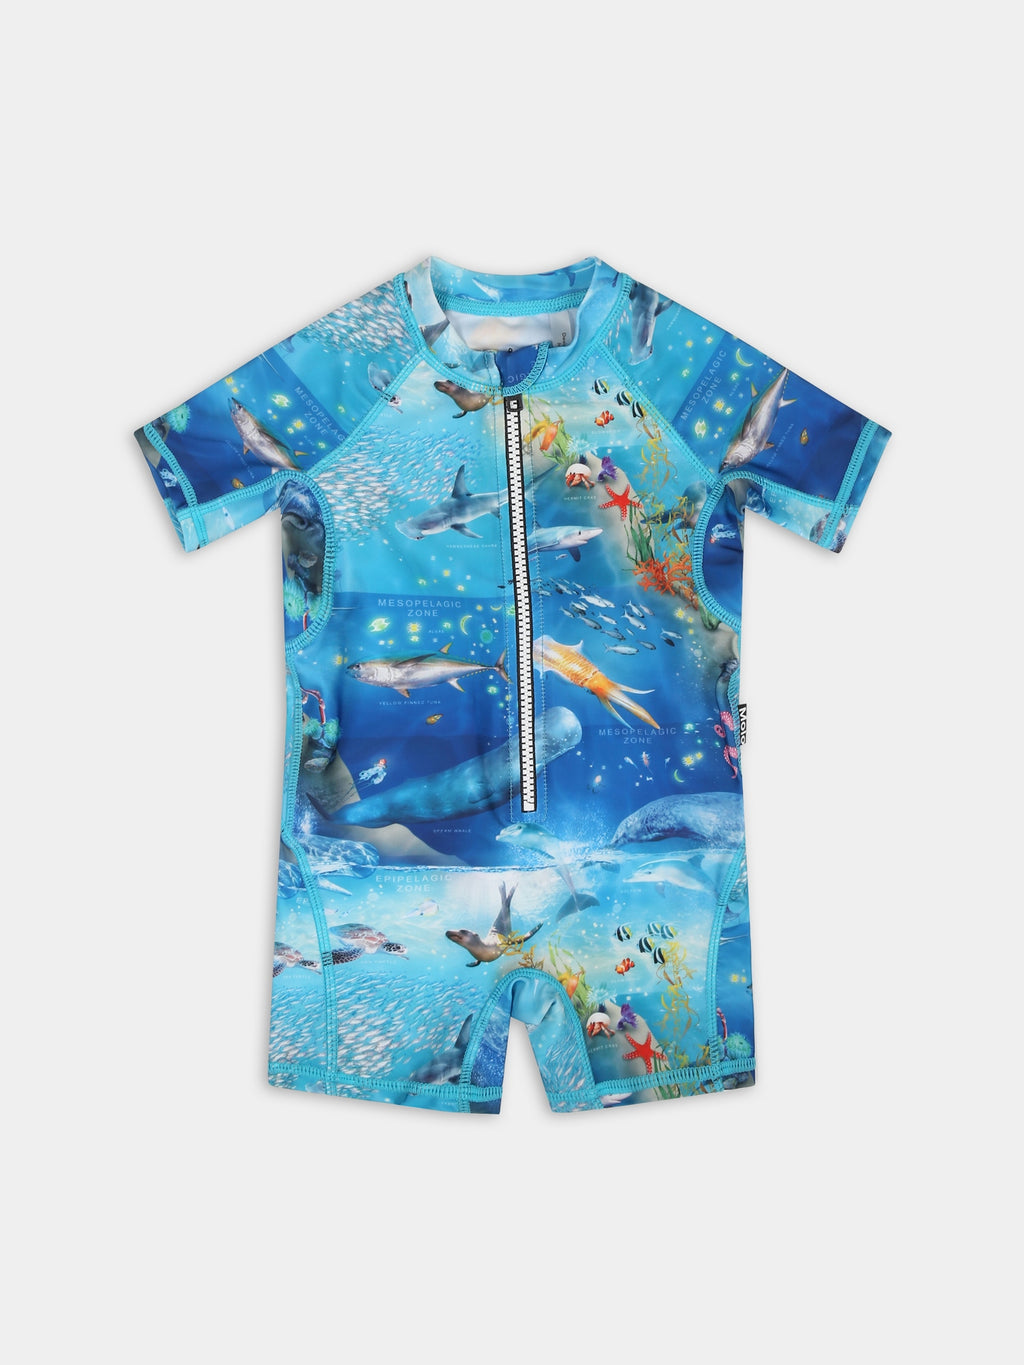 Maillot de bain bleu ciel pour bébé garçon avec animaux marins